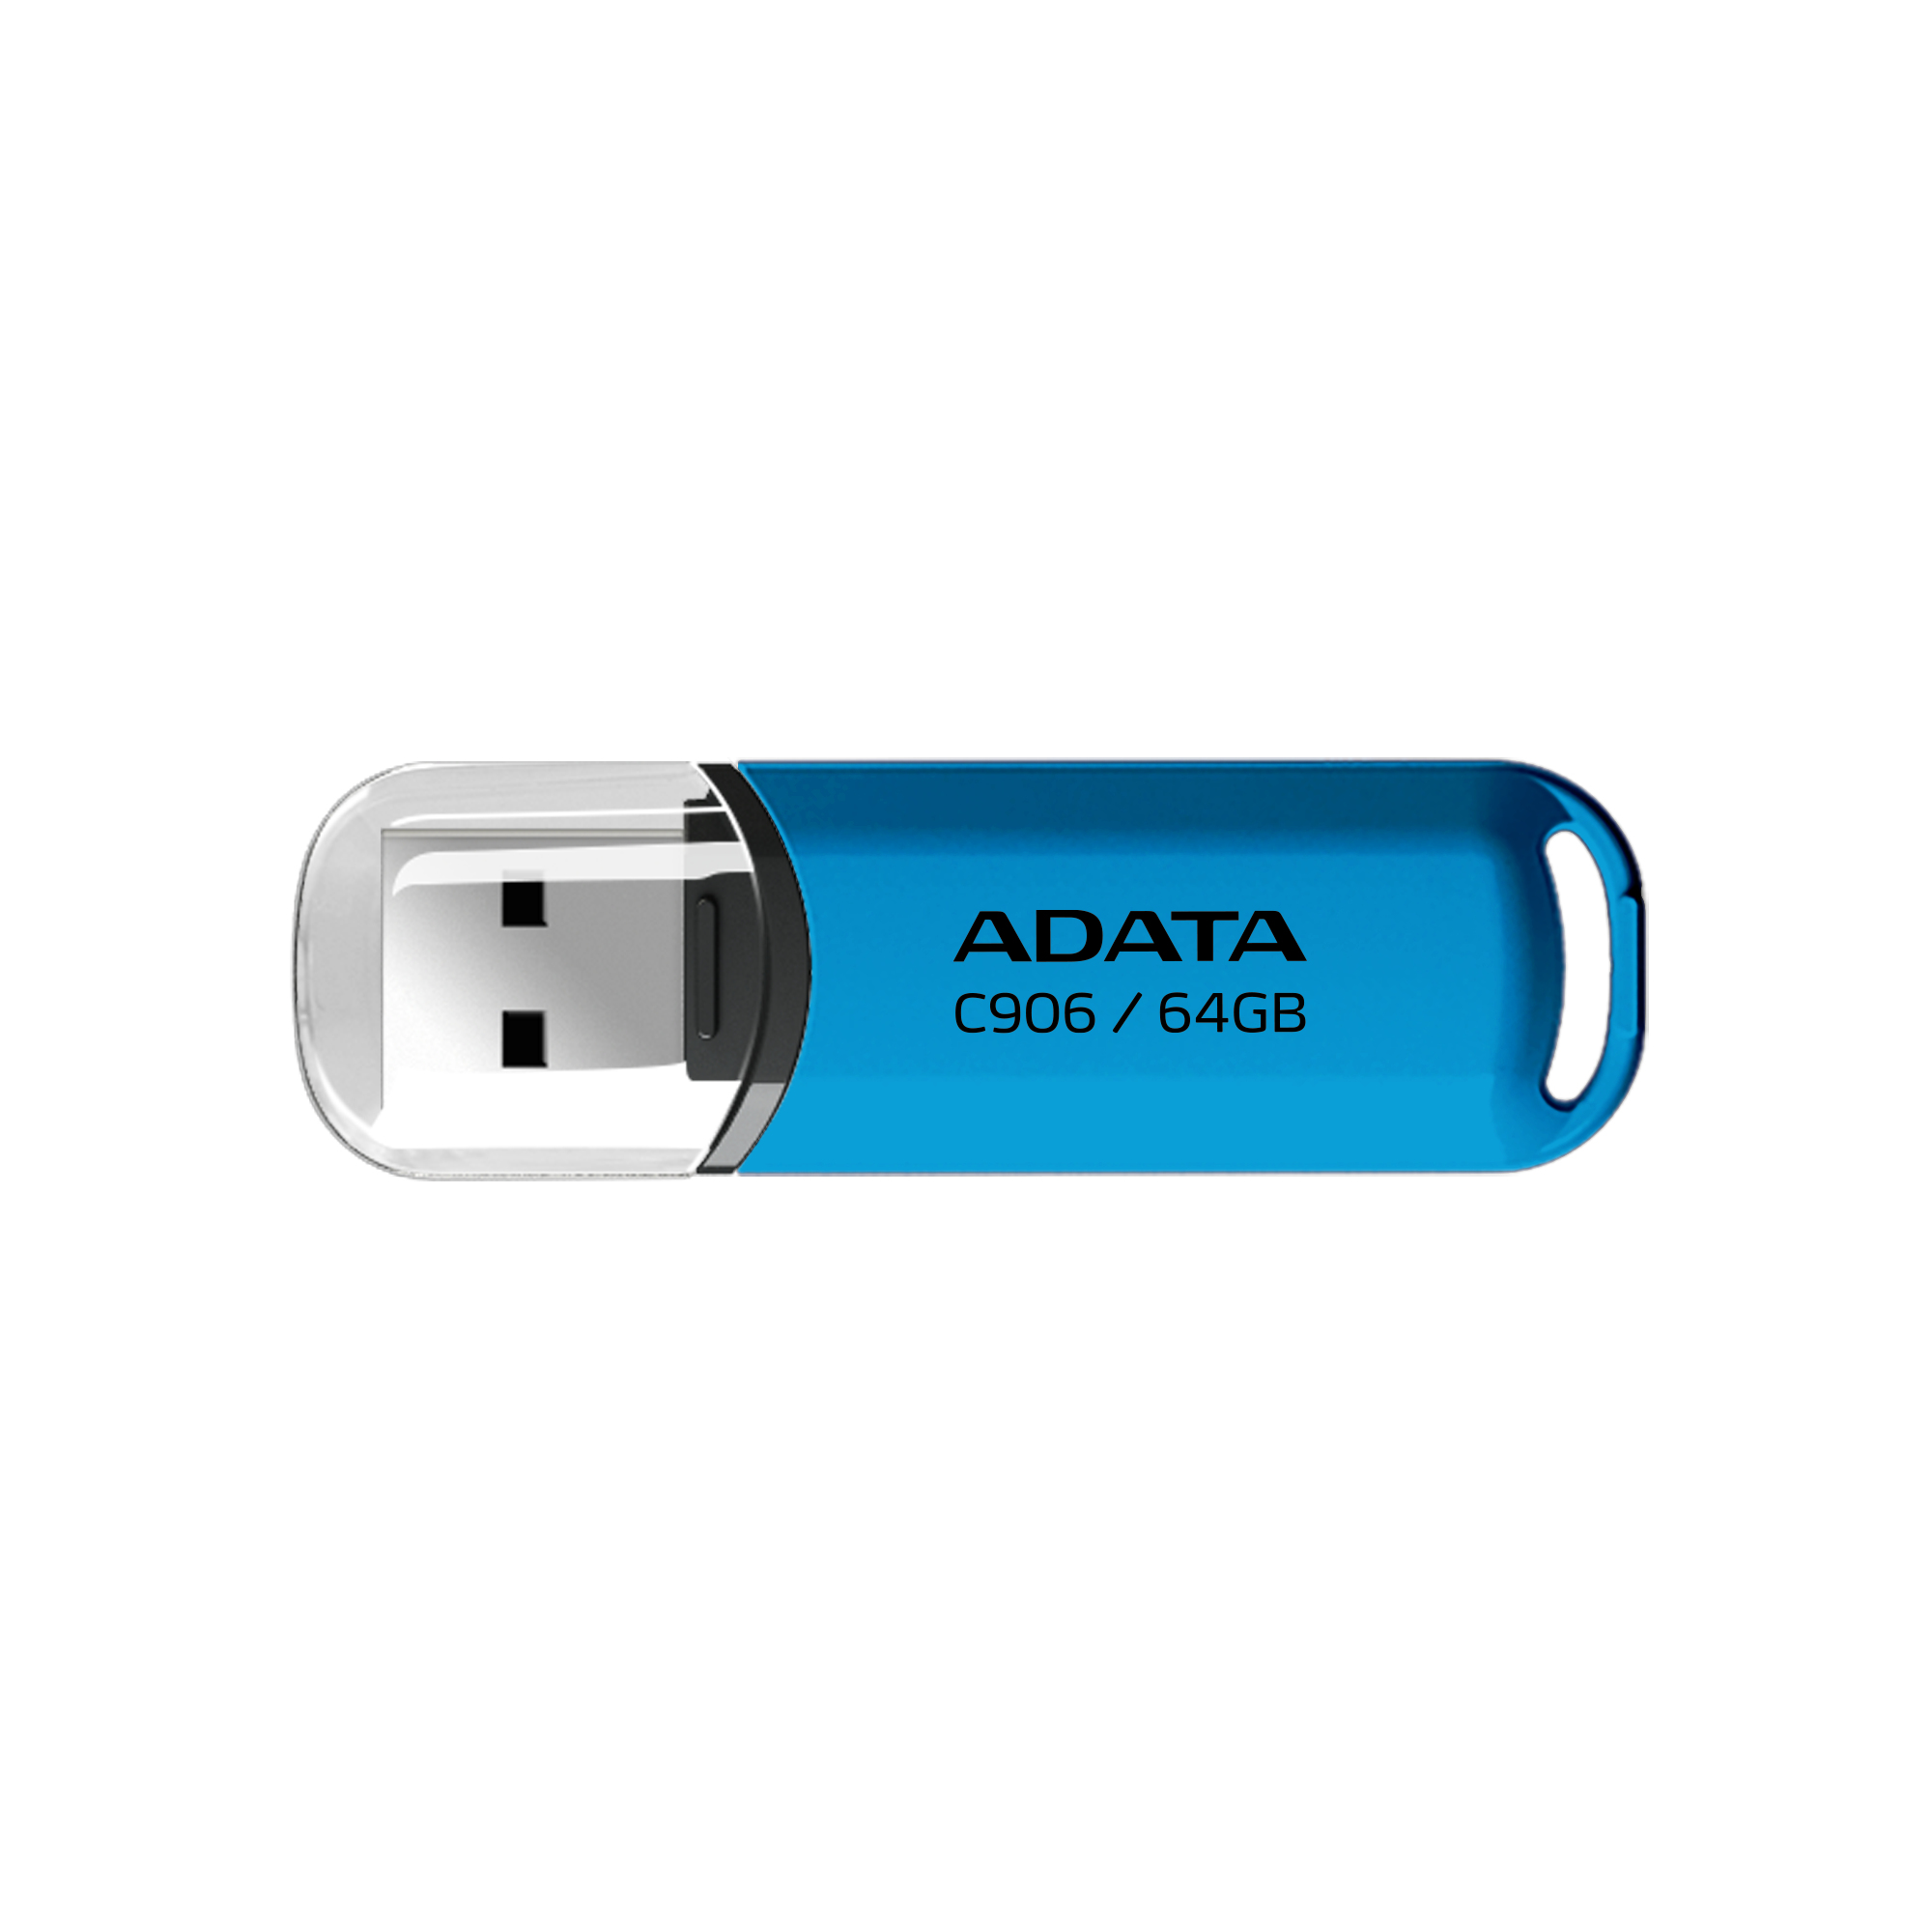 Memoria USB ADATA C906 - Azul